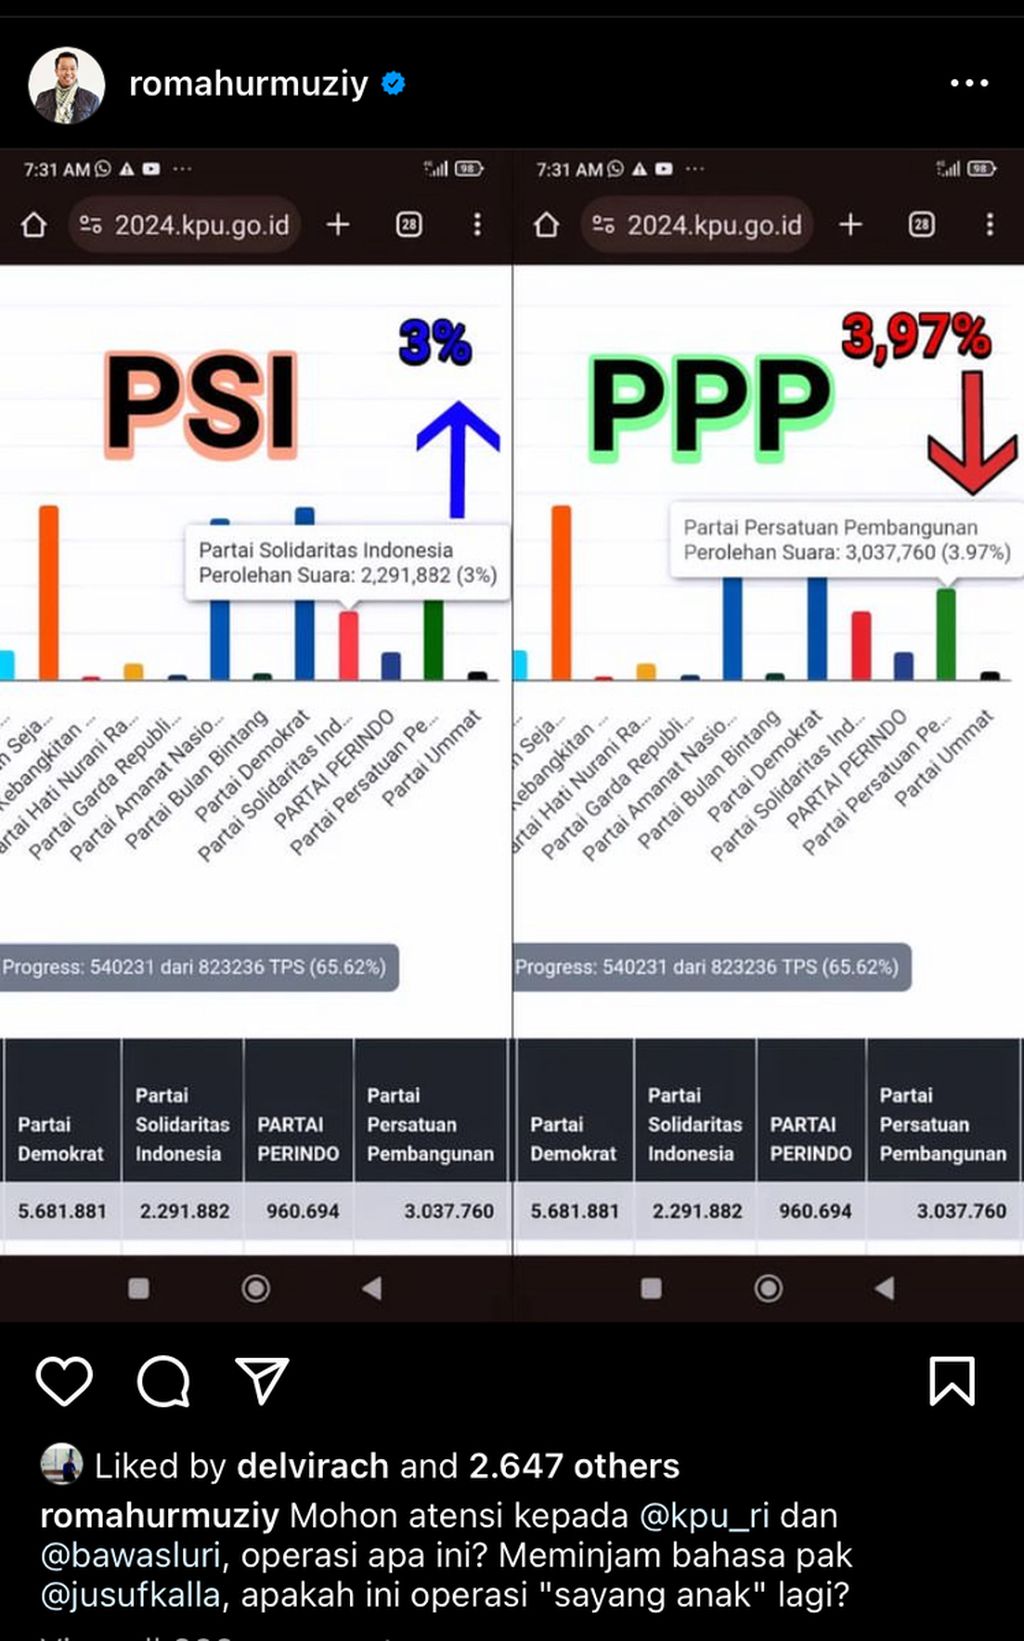 Salah satu unggahan Ketua Majelis Pertimbangan PPP Romahurmuziy yang mengungkapkan ada kenaikan suara PSI yang signifikan, sementara suara PPP justru menurun.